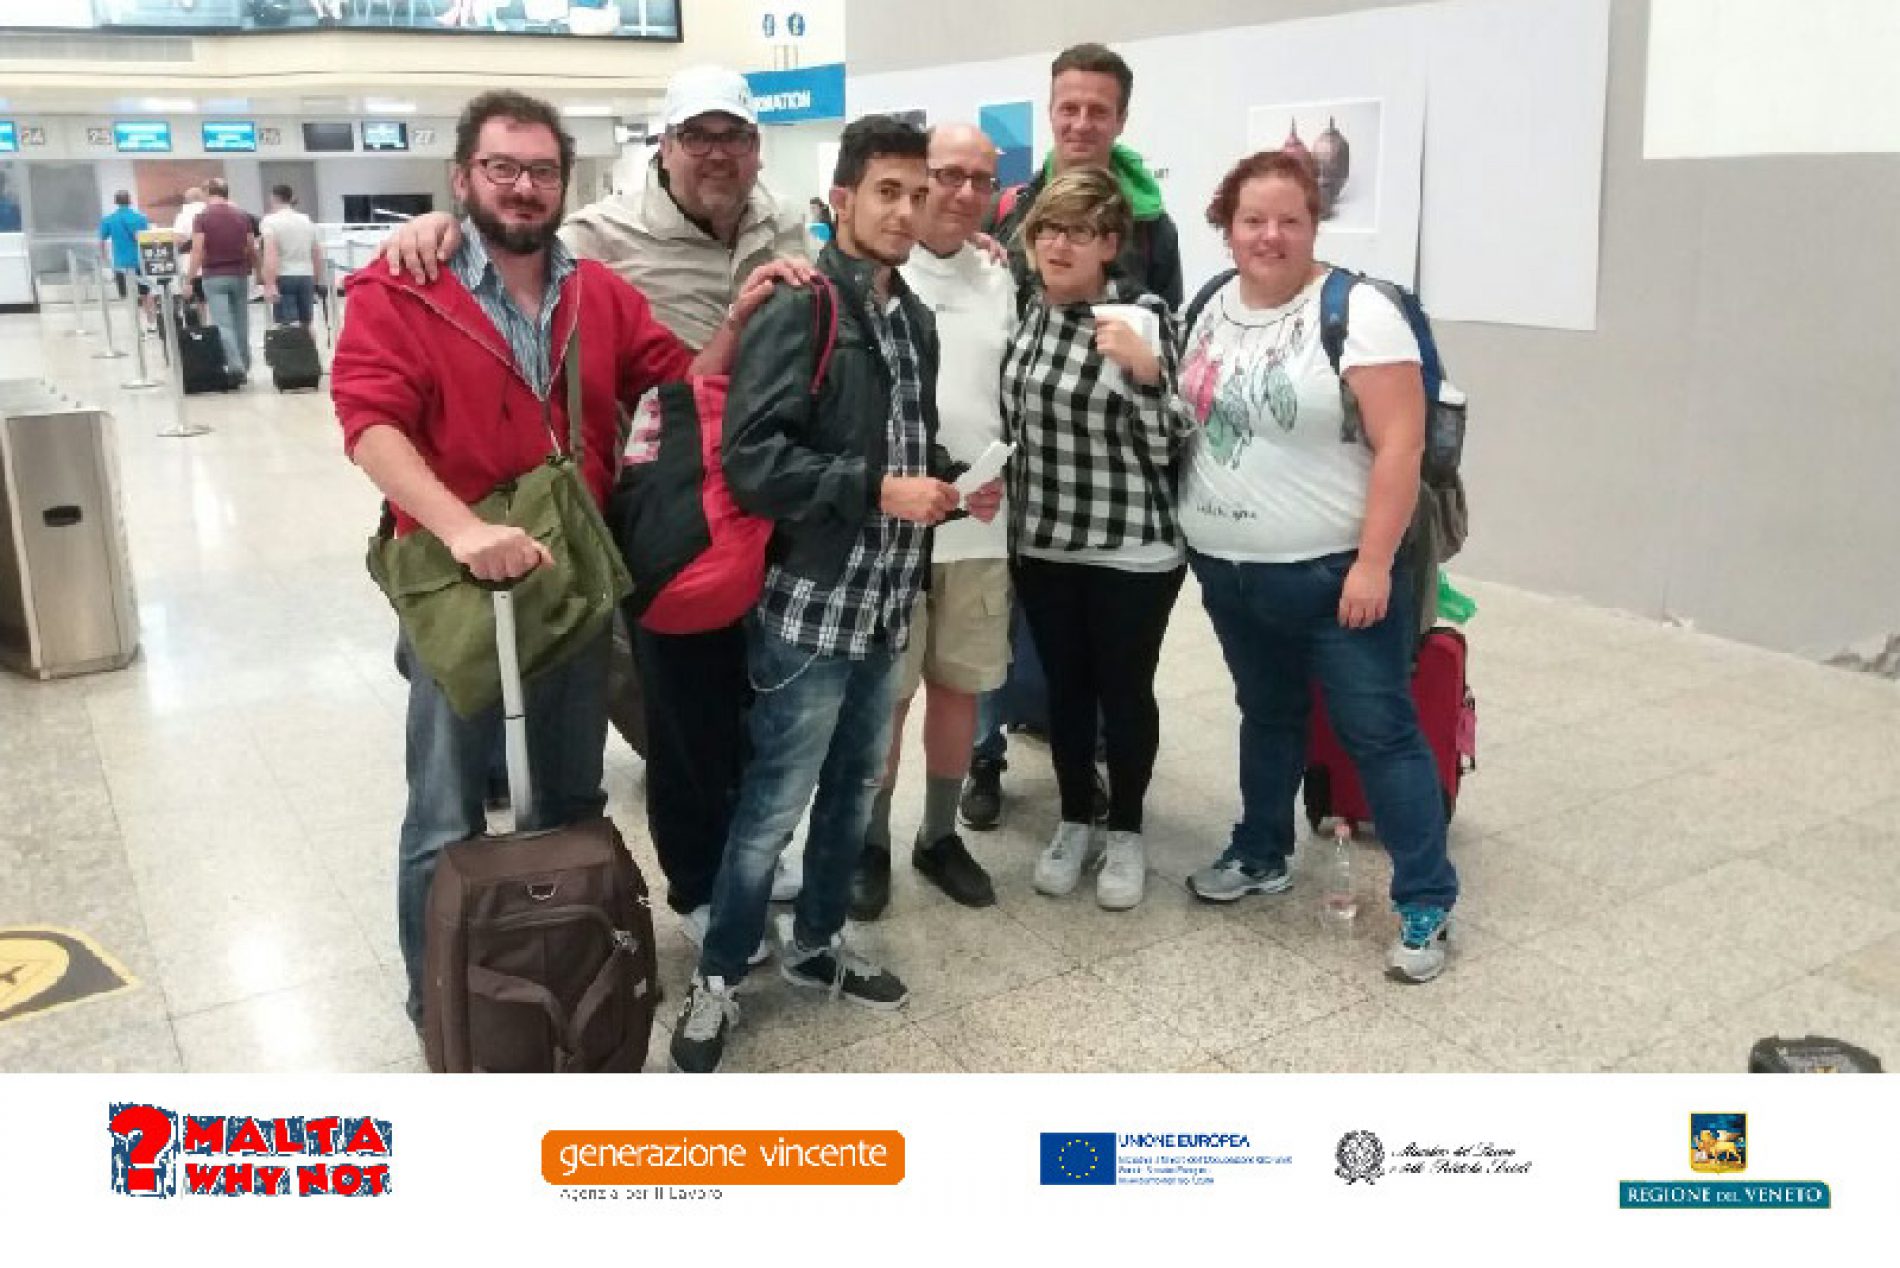 Generazione Vincente sostiene Maltawhynot, un lavoro all’estero per giovani con disabilità